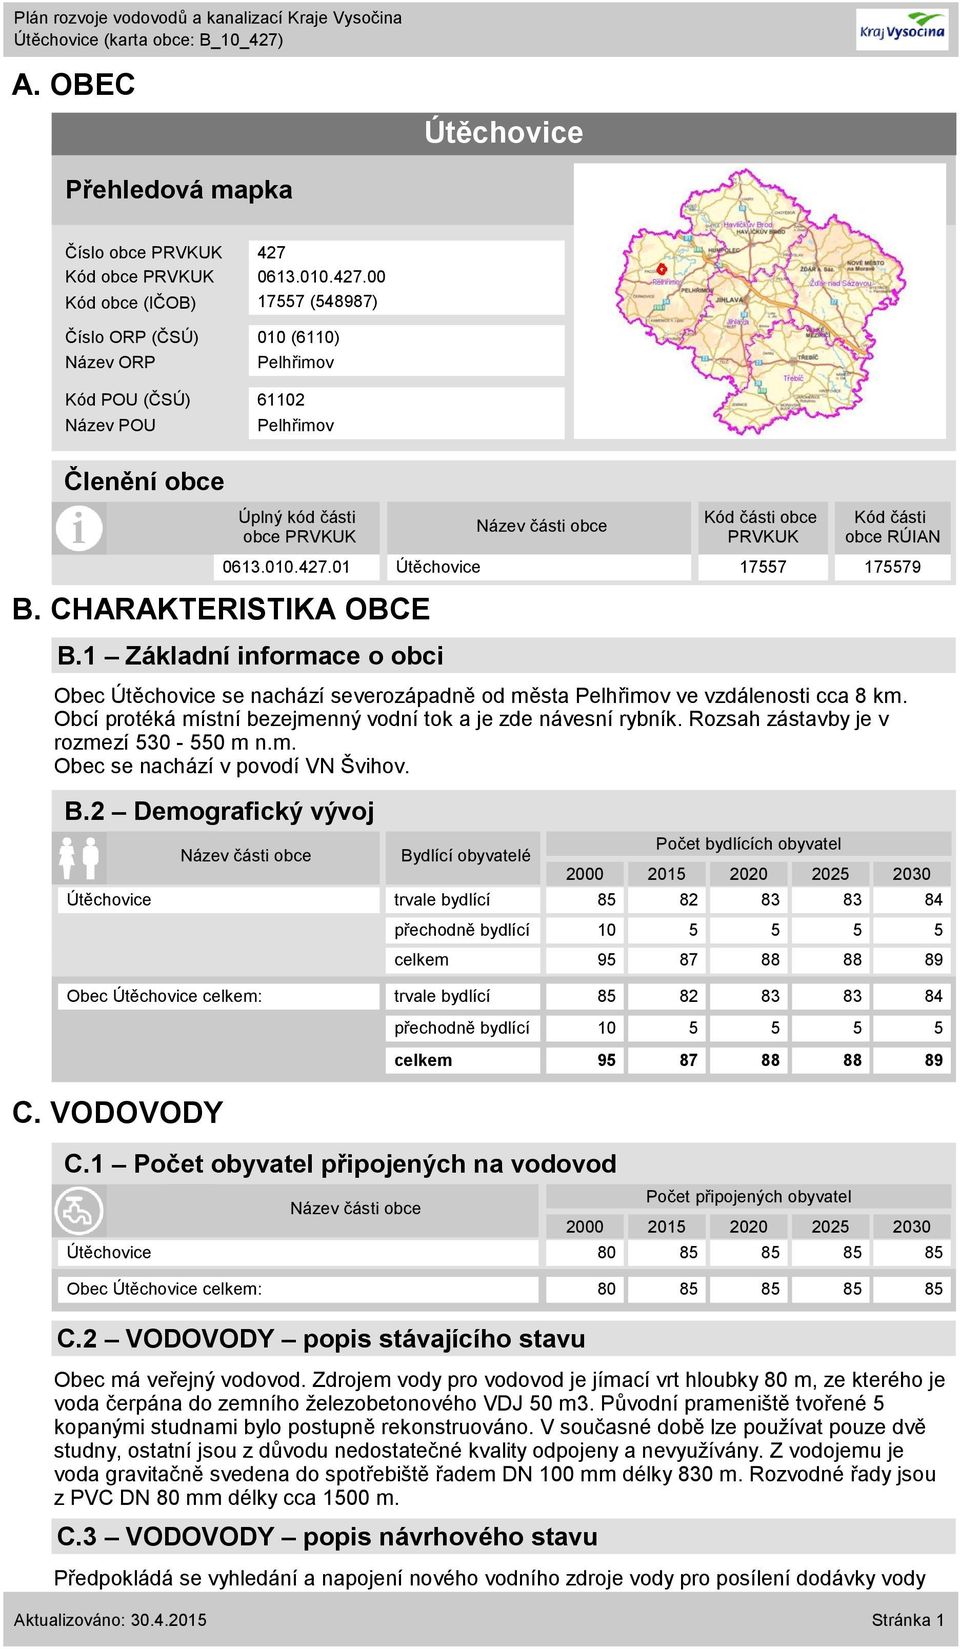 CHARAKTERISTIKA OBCE B.1 Základní informace o obci Obec Útěchovice se nachází severozápadně od města Pelhřimov ve vzdálenosti cca 8 km.